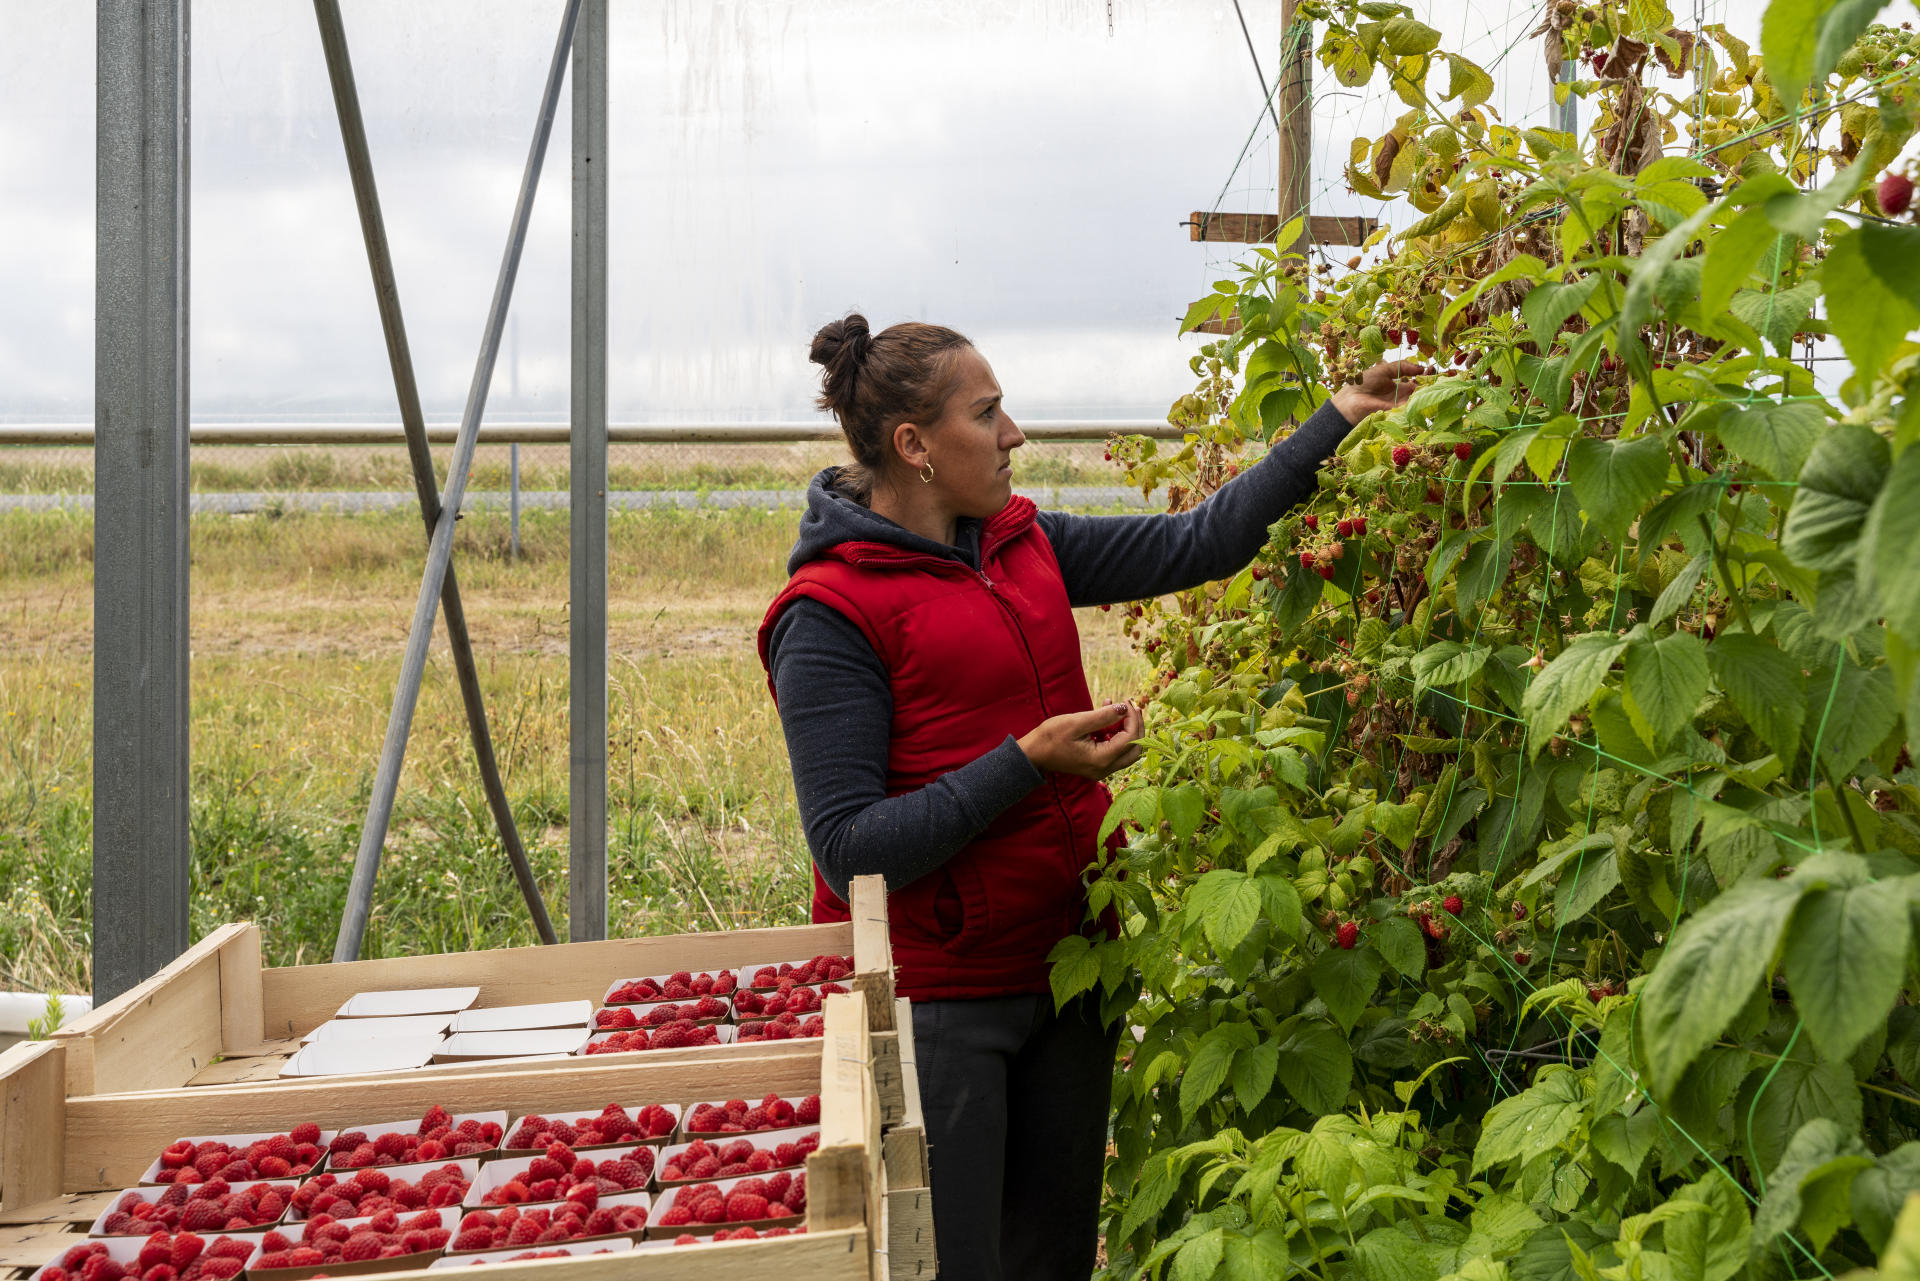 Des saisonniers bulgares cueillent des fraises et des framboises, à Contres (Loir-et-Cher), le 8 juin 2022.